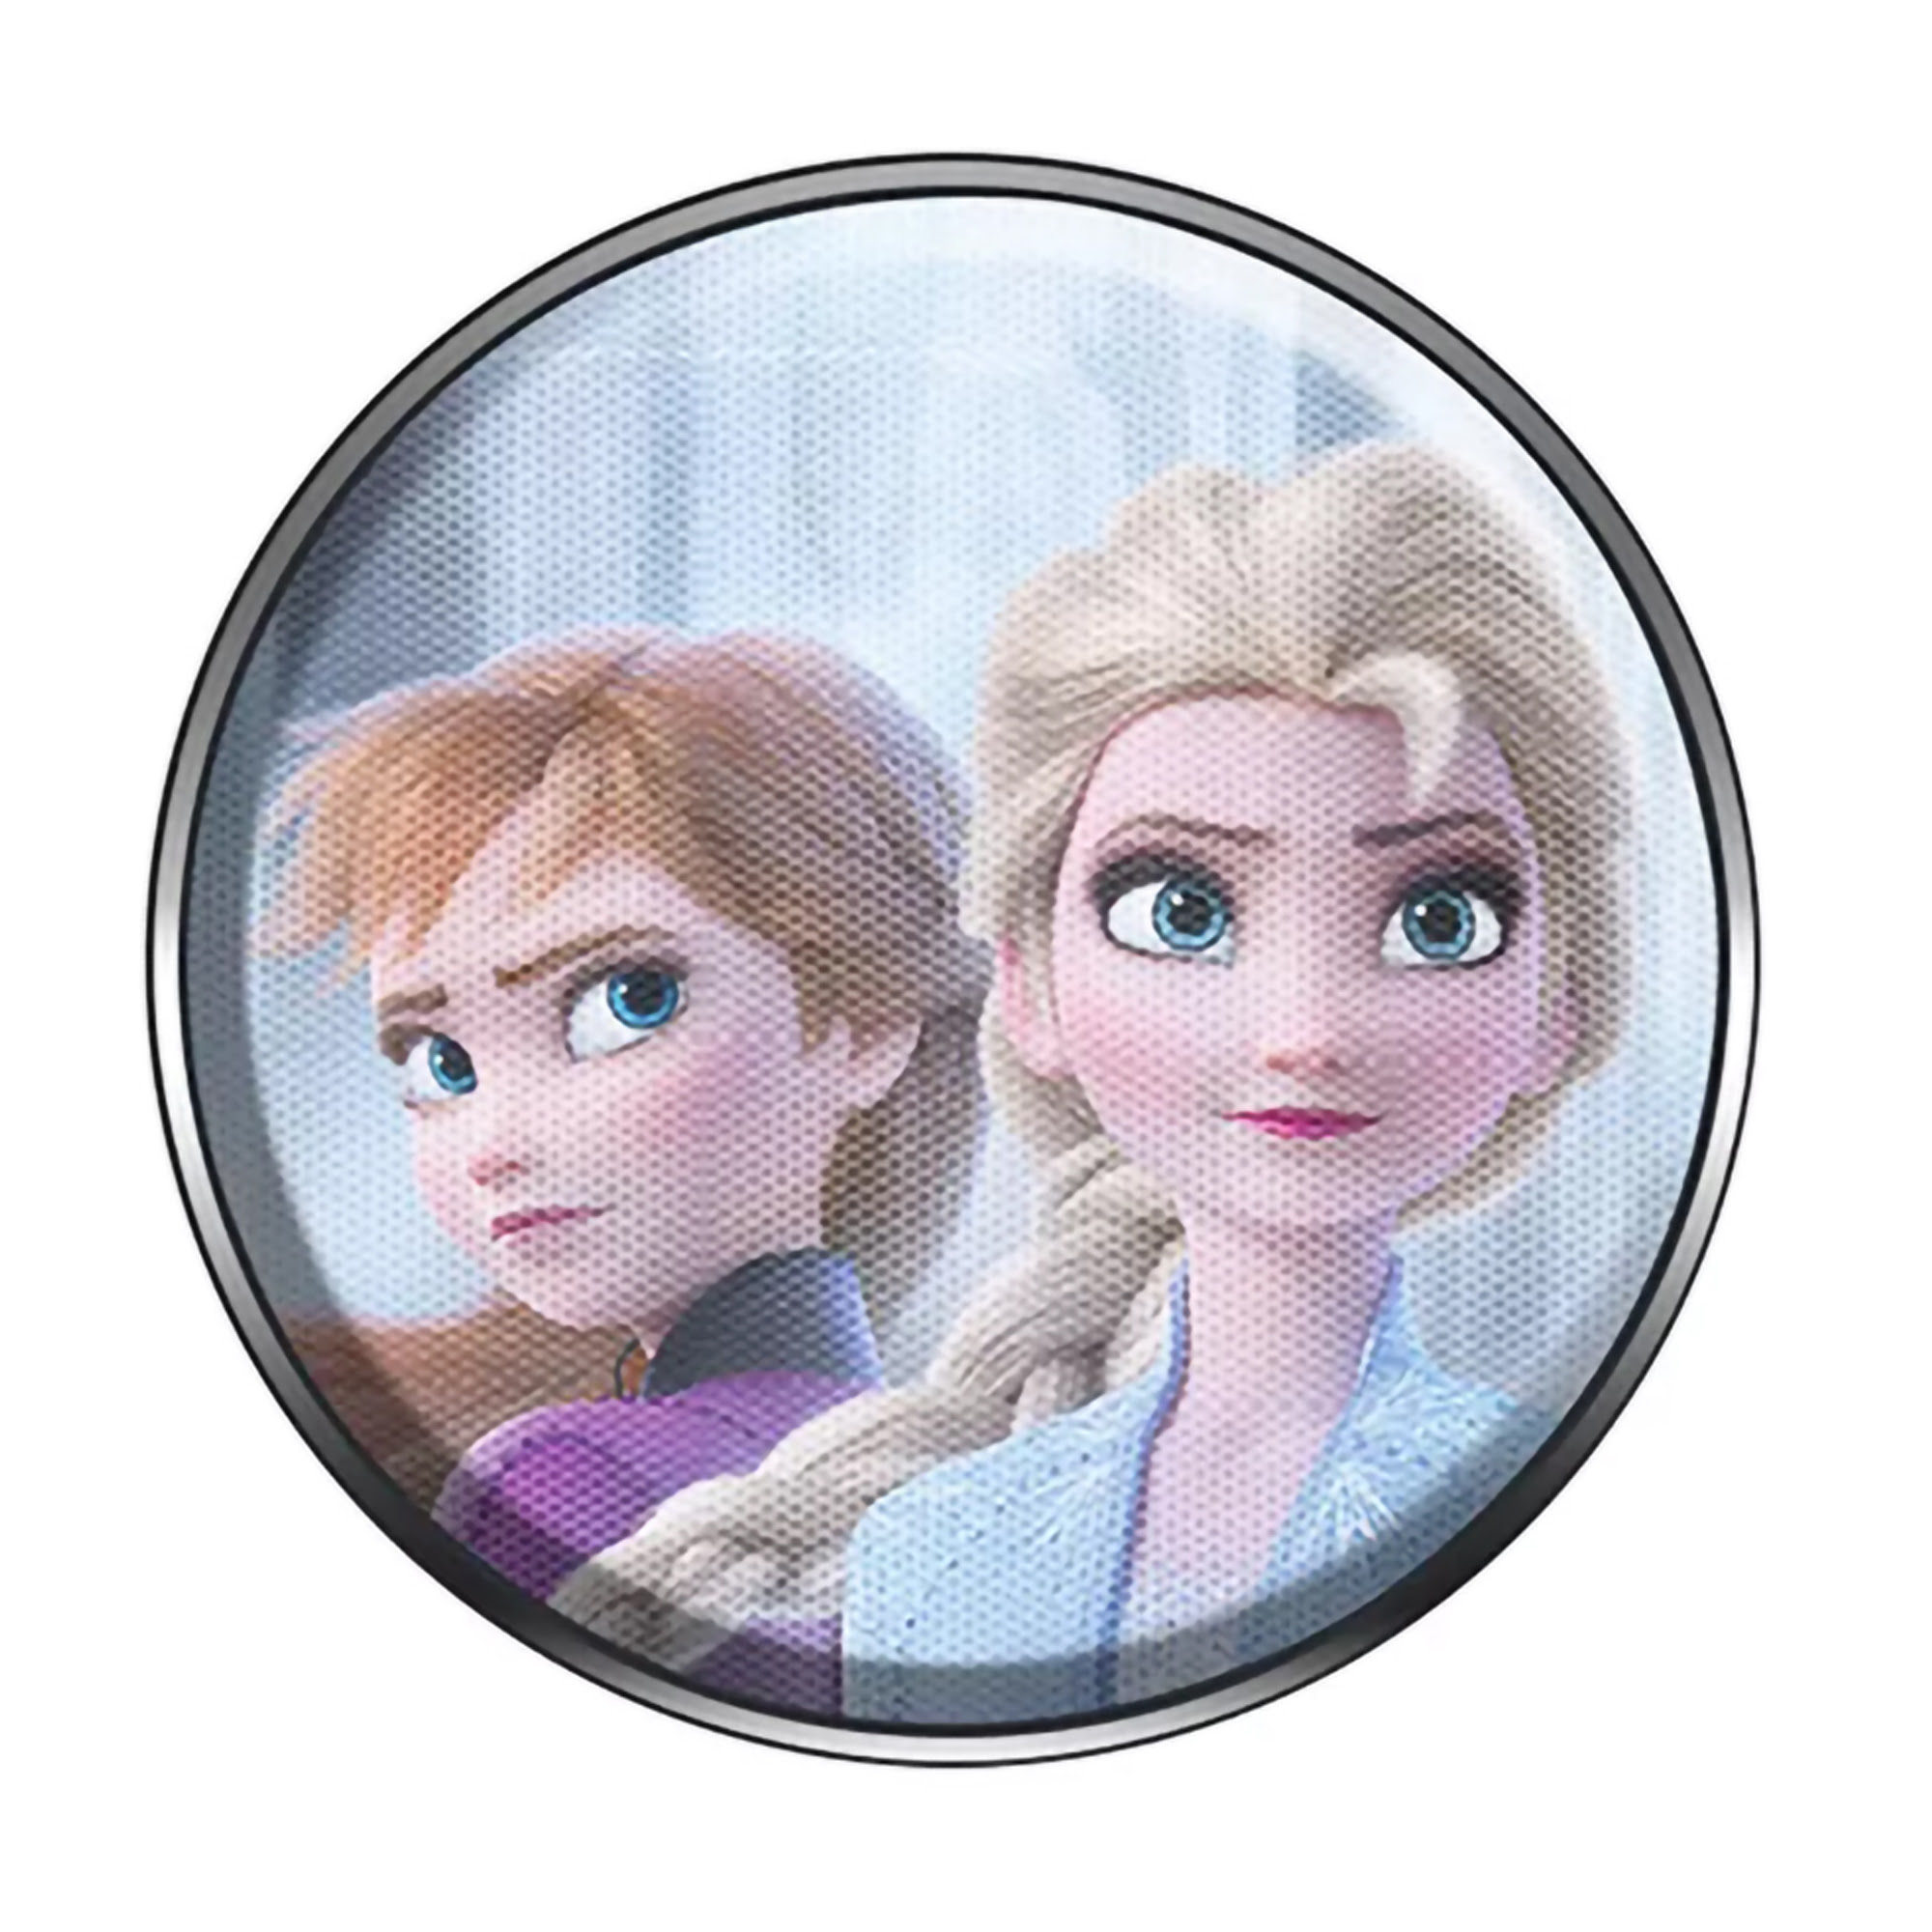 Altavoz Inalámbrico Portátil 3w Frozen Disney  MKP